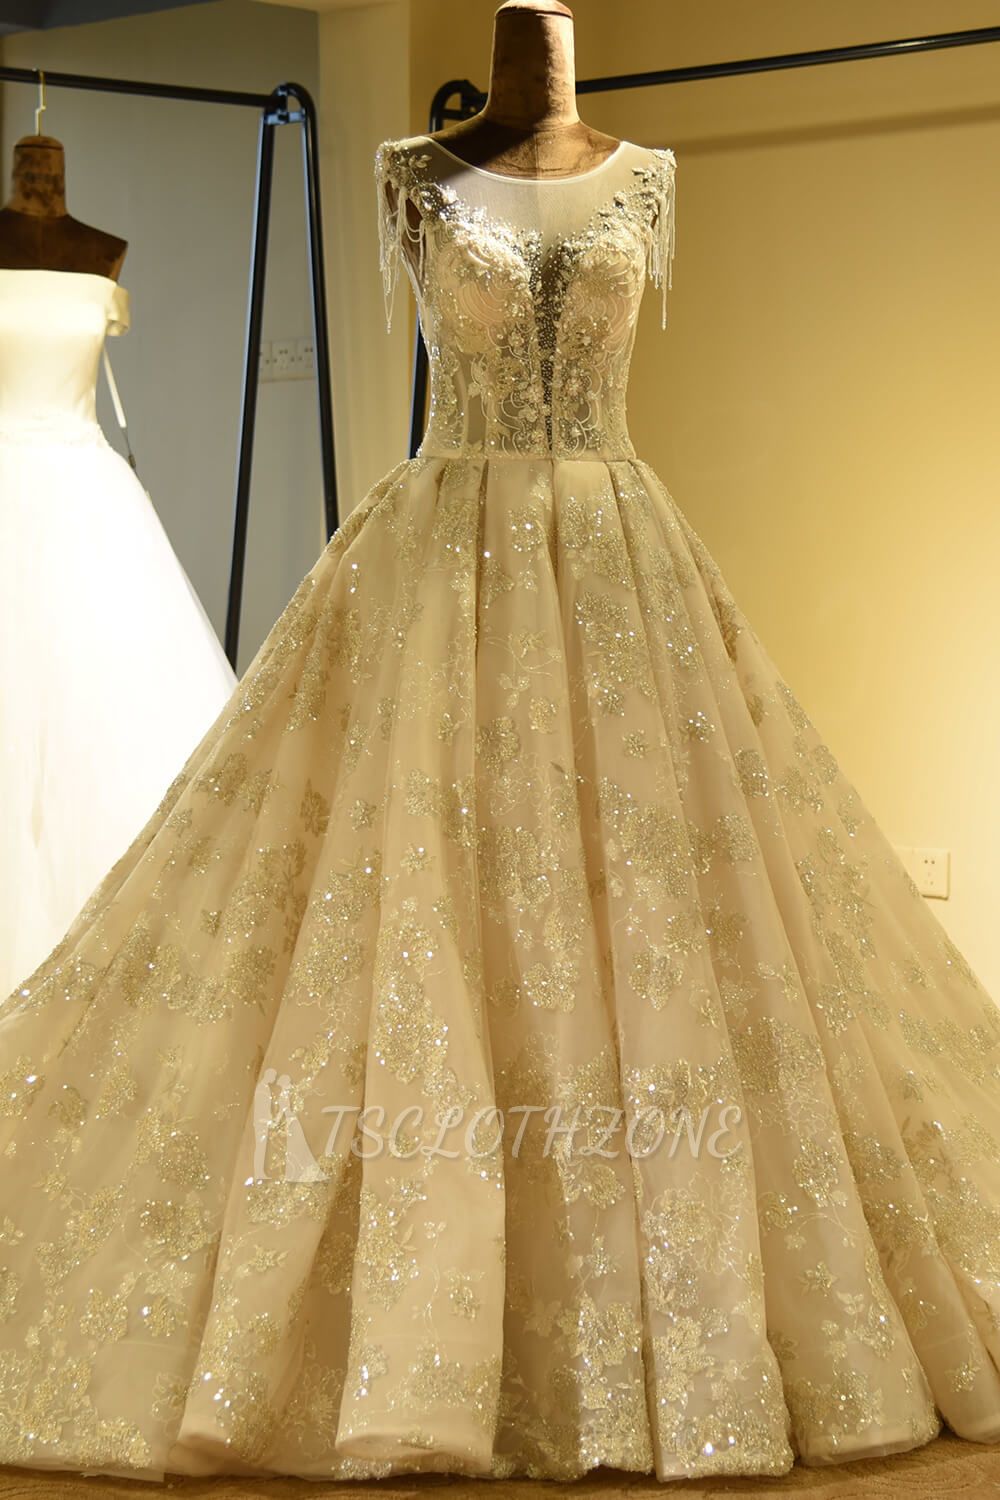 Amazing Princess Lace-up Sparkly Beading Tulle Ivory Princess Wedding Dress